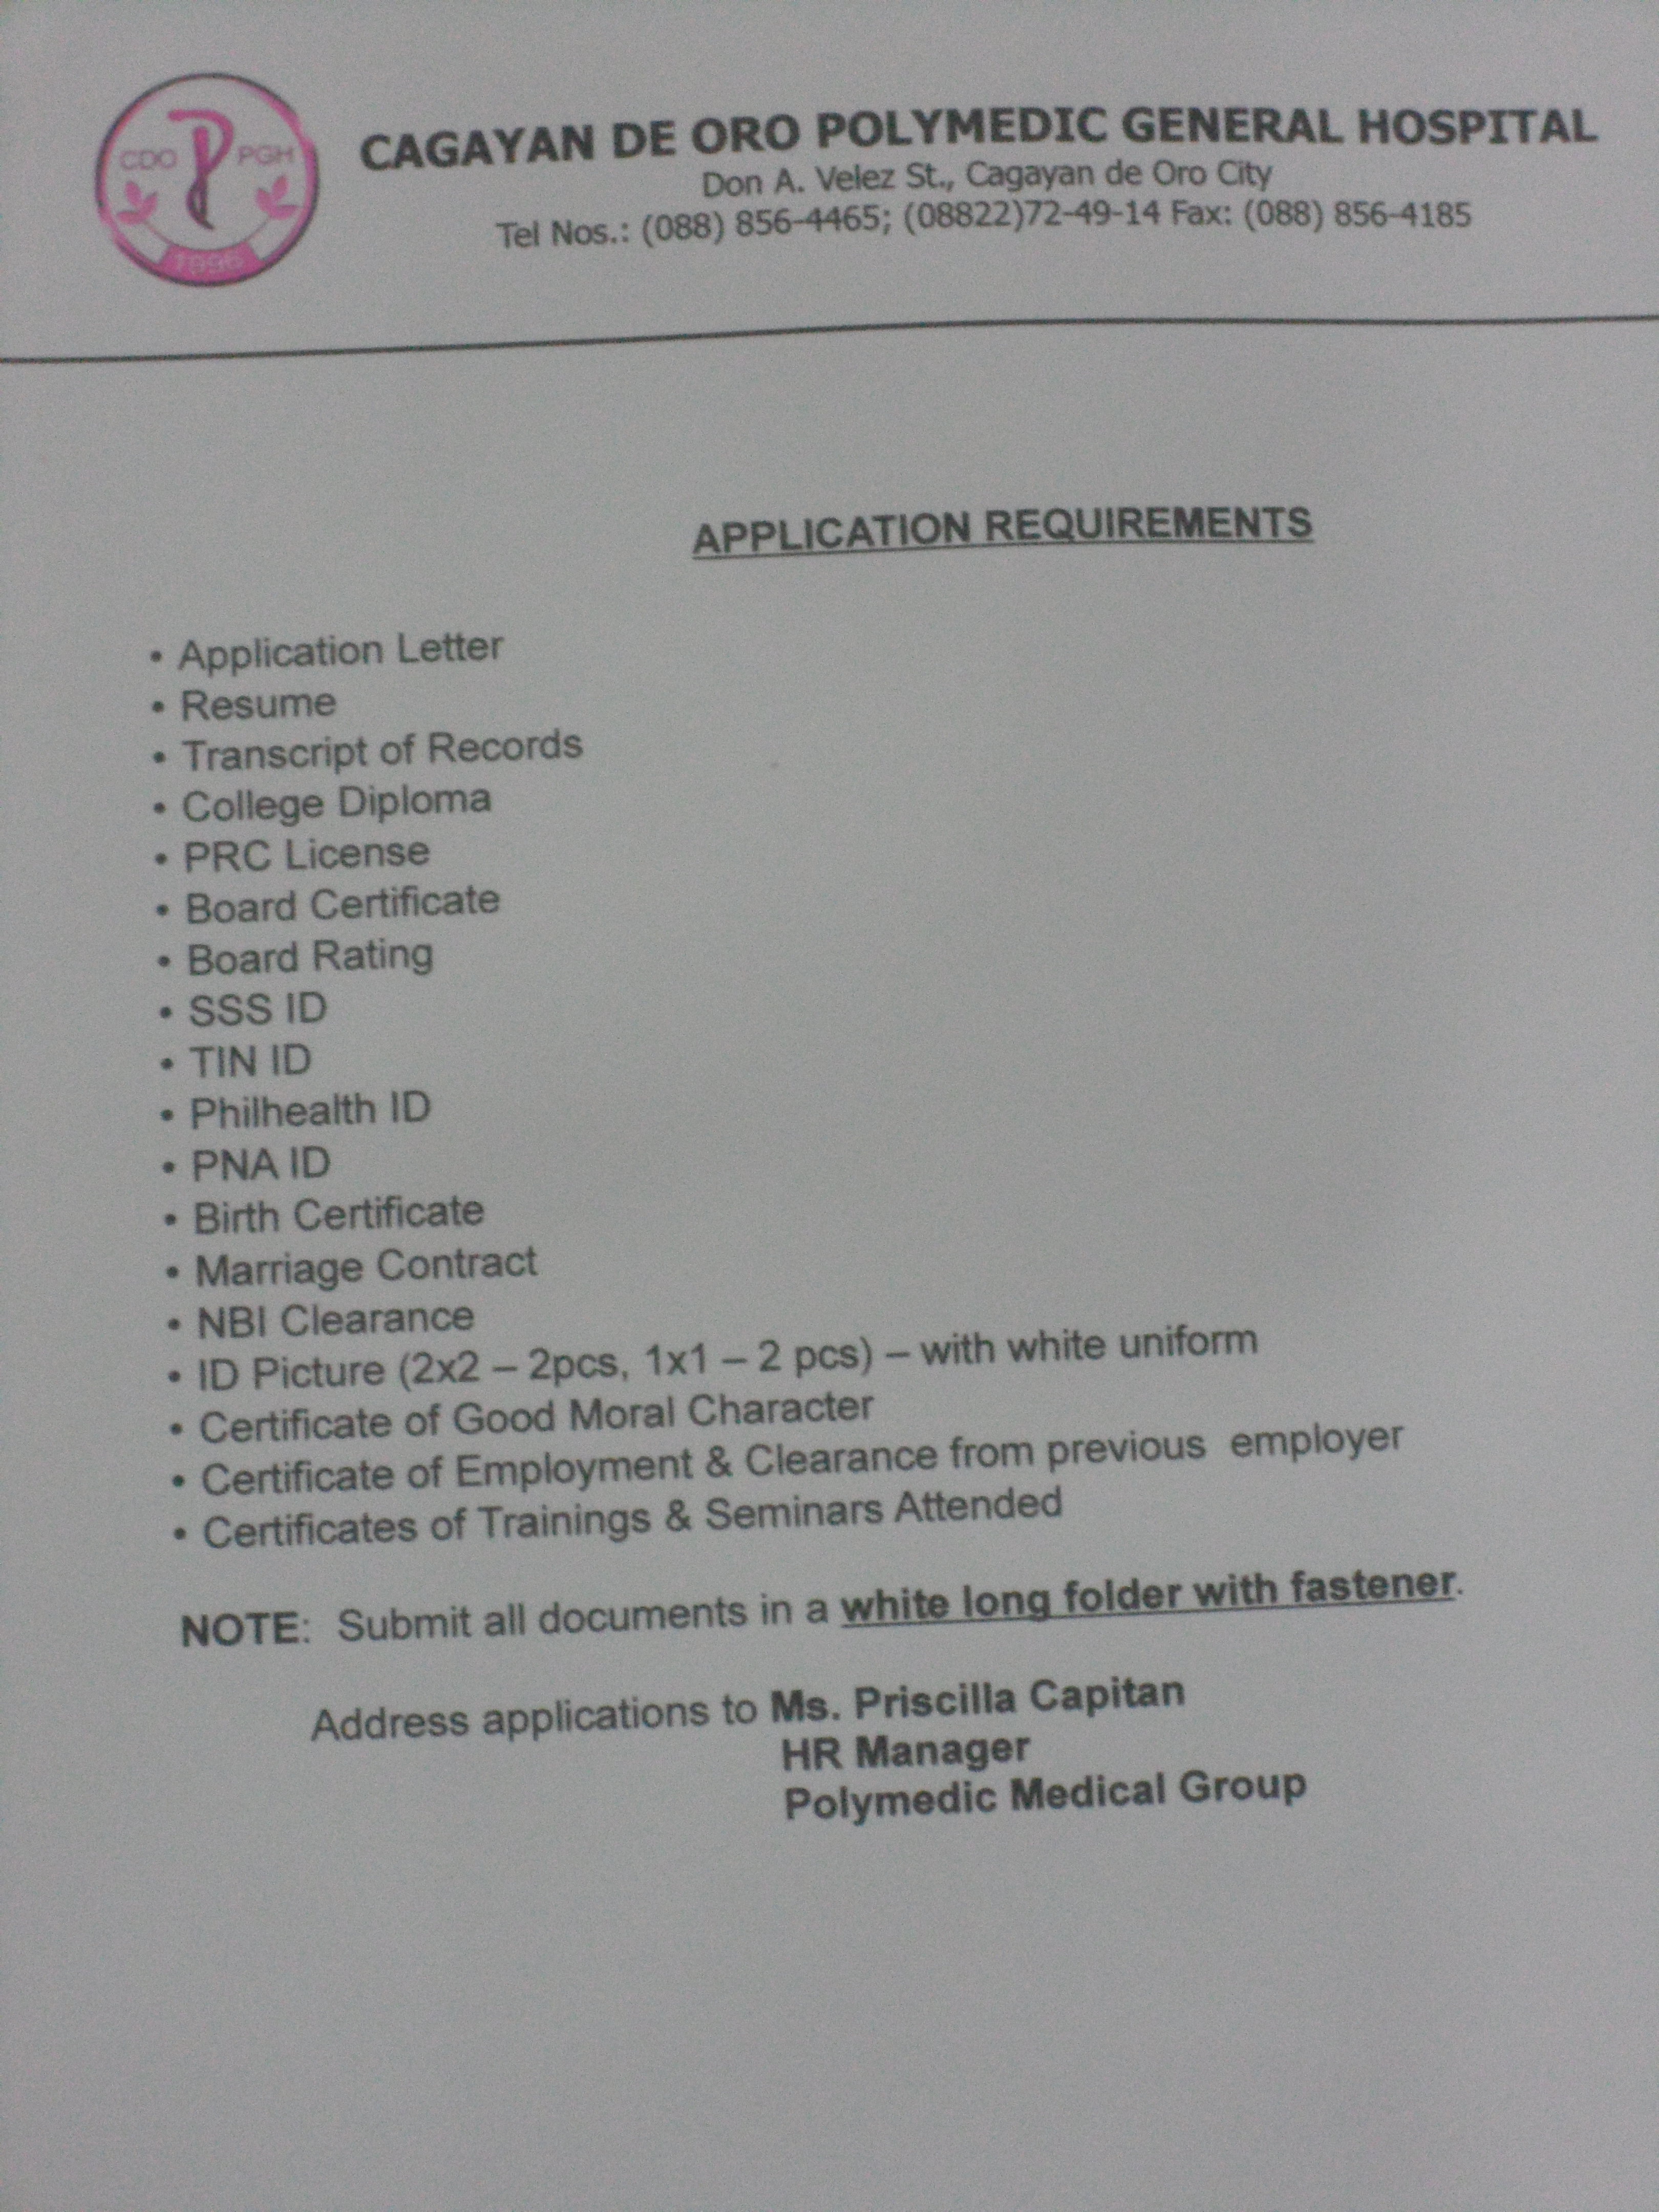 Cagayan de Oro Polymedic General Hospital Application